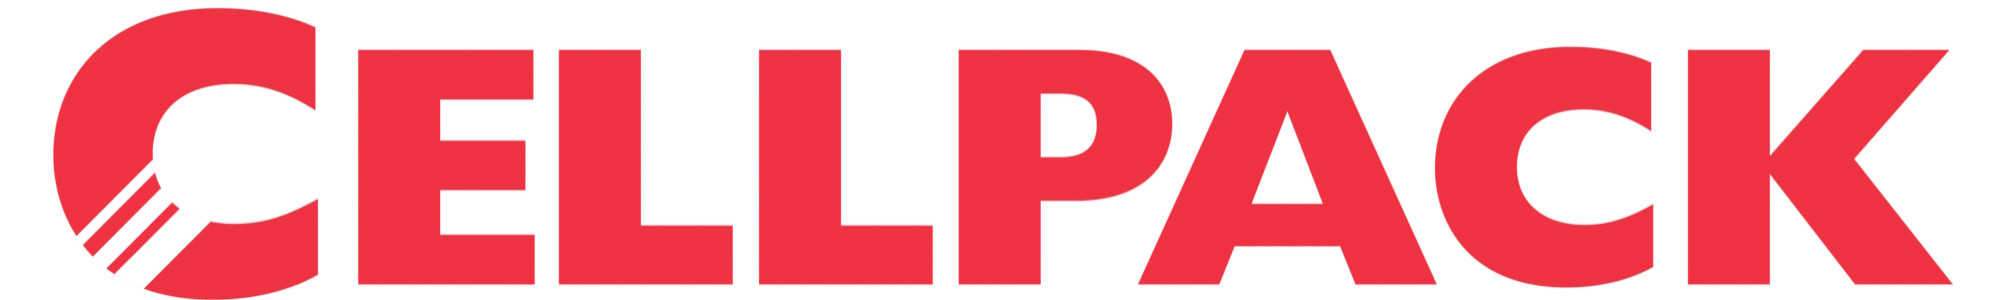 Logo Cellpack